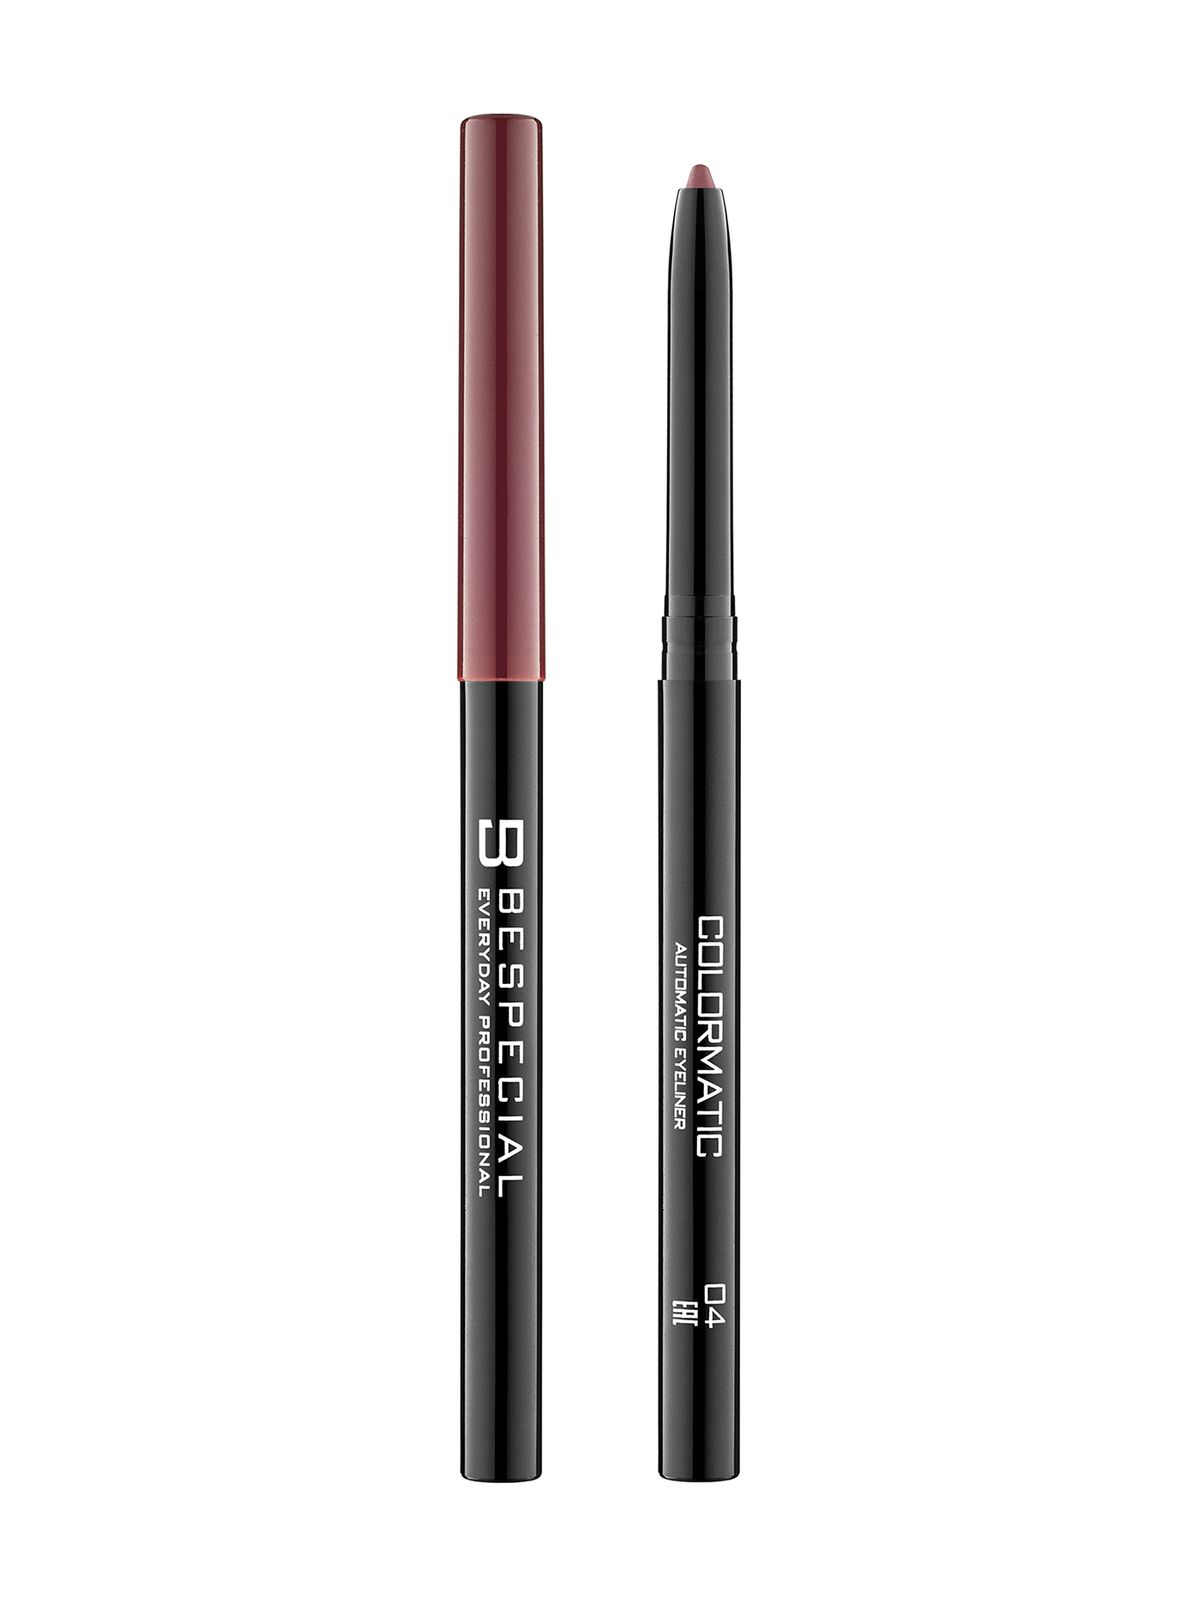 Механический карандаш для глаз Bespecial Colormatic Eye Pencil карандаш механический для губ тон 206 красный 0 28г